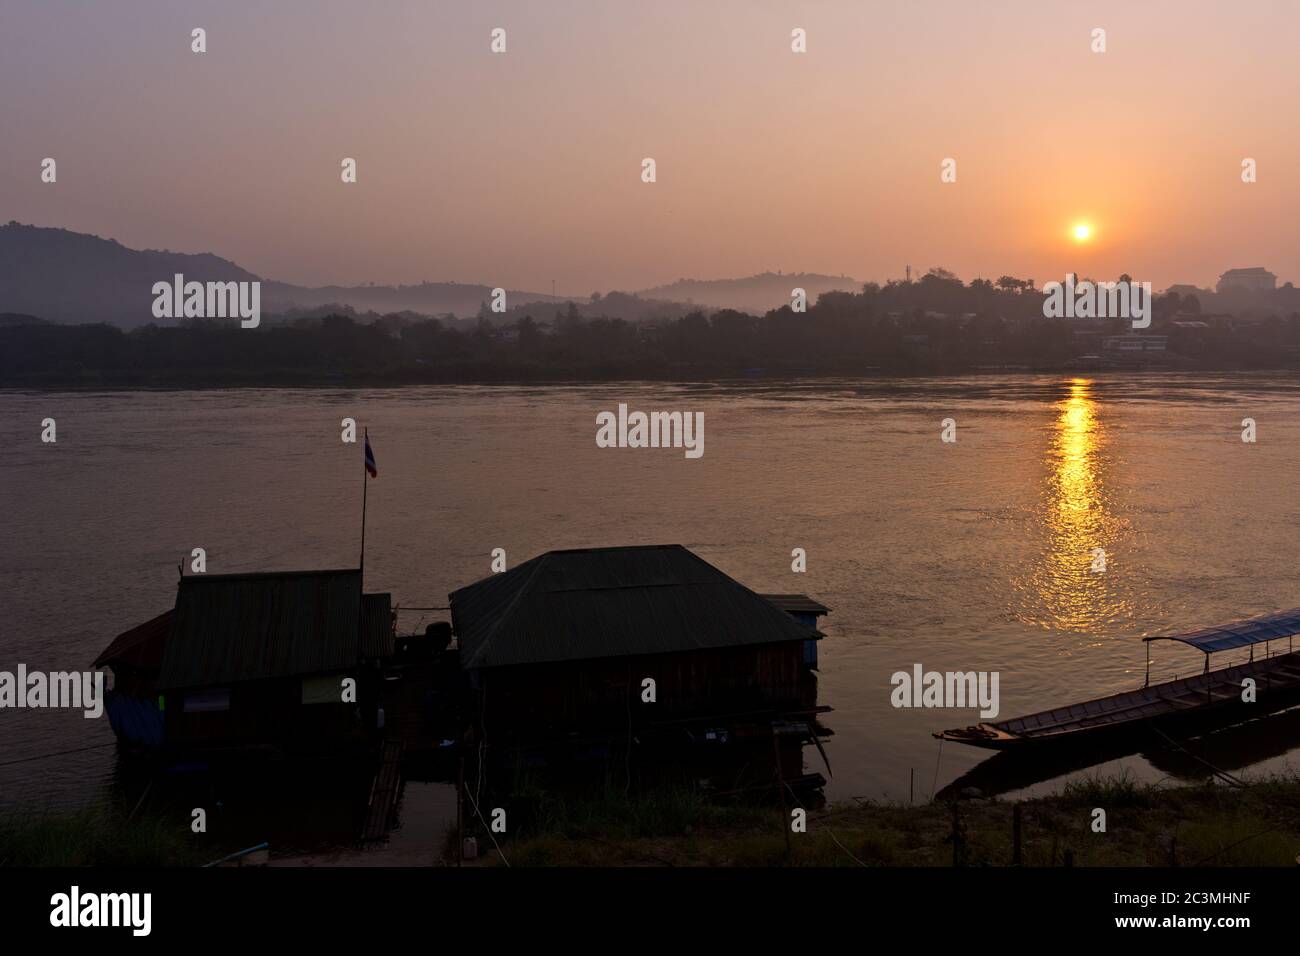 Boat at Pier While Sunrise at Mekong River, Chiang Khong, Thailand, Asia Stock Photo